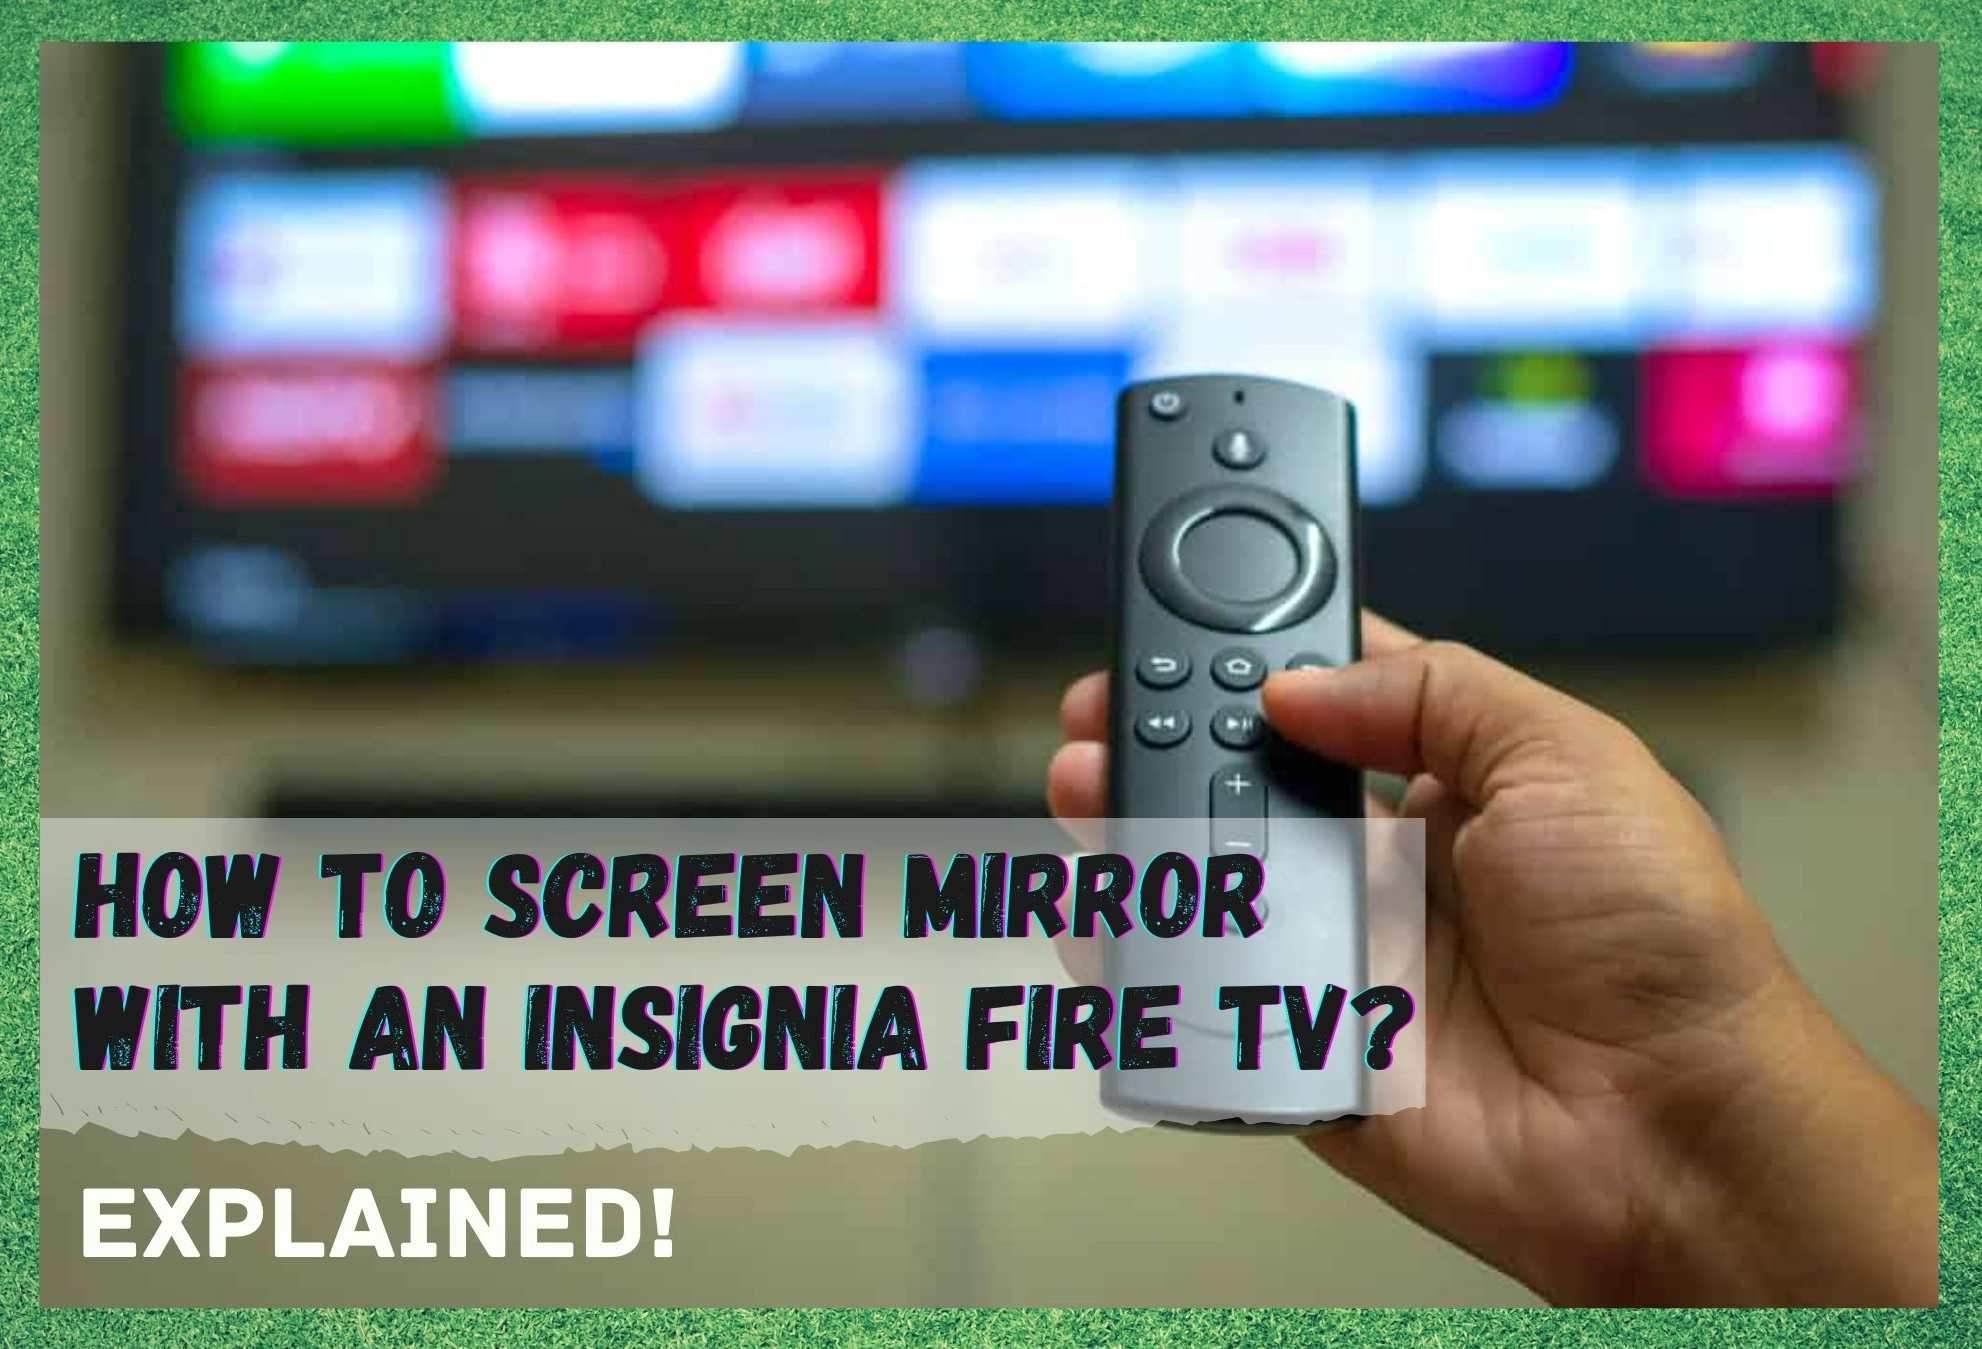 Nola sartu Screen Mirroring Insignia Fire TV?